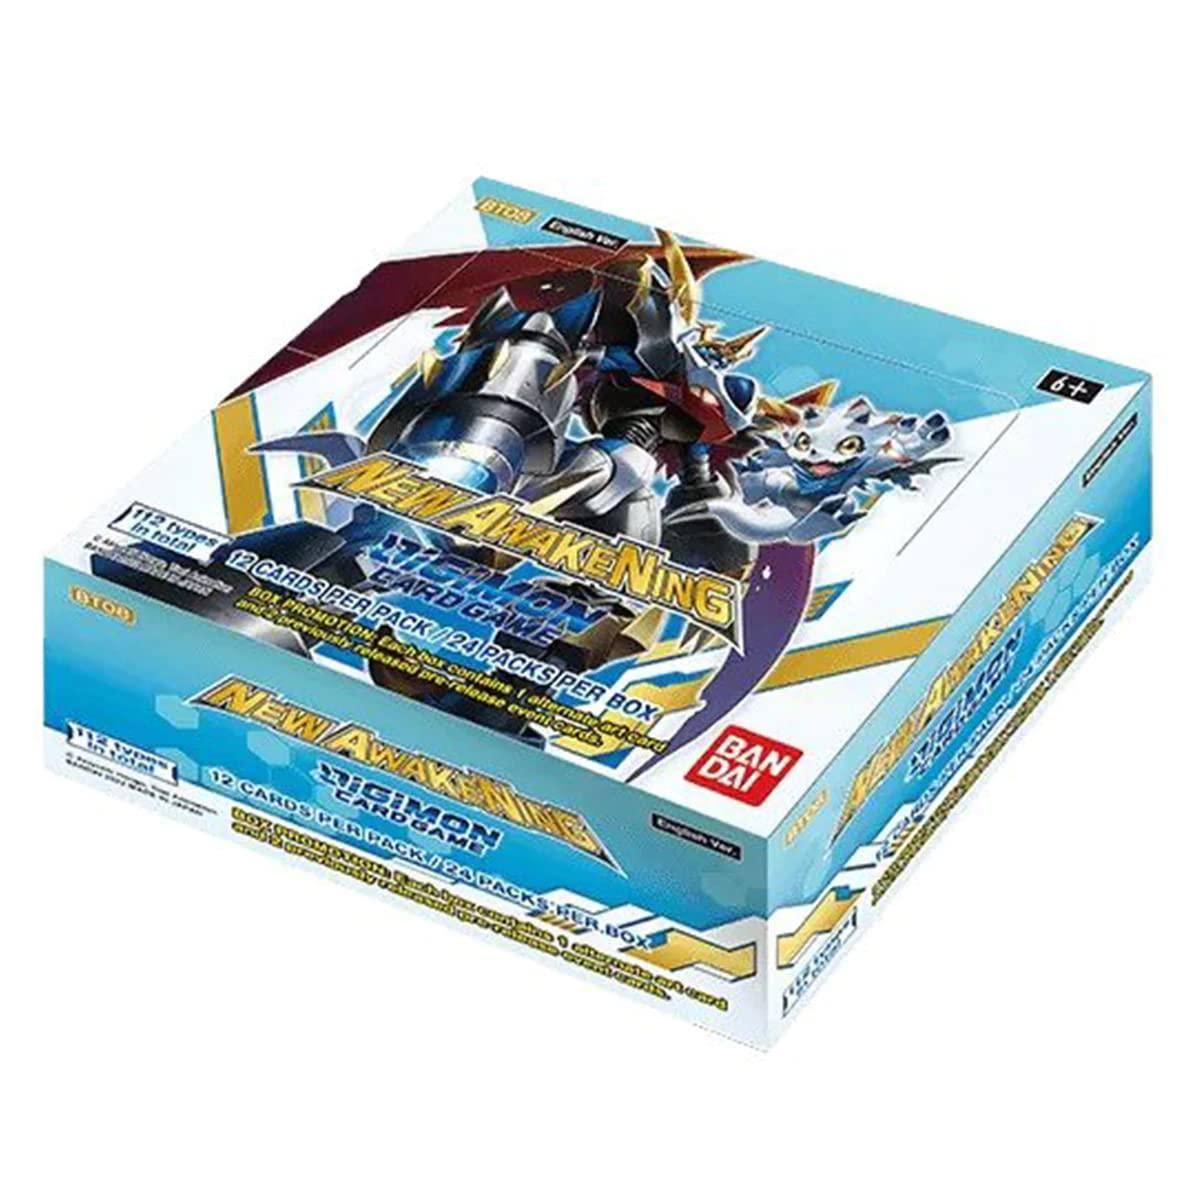 Digimon Card Game Series 08 - New Awakening BT08 Booster Box